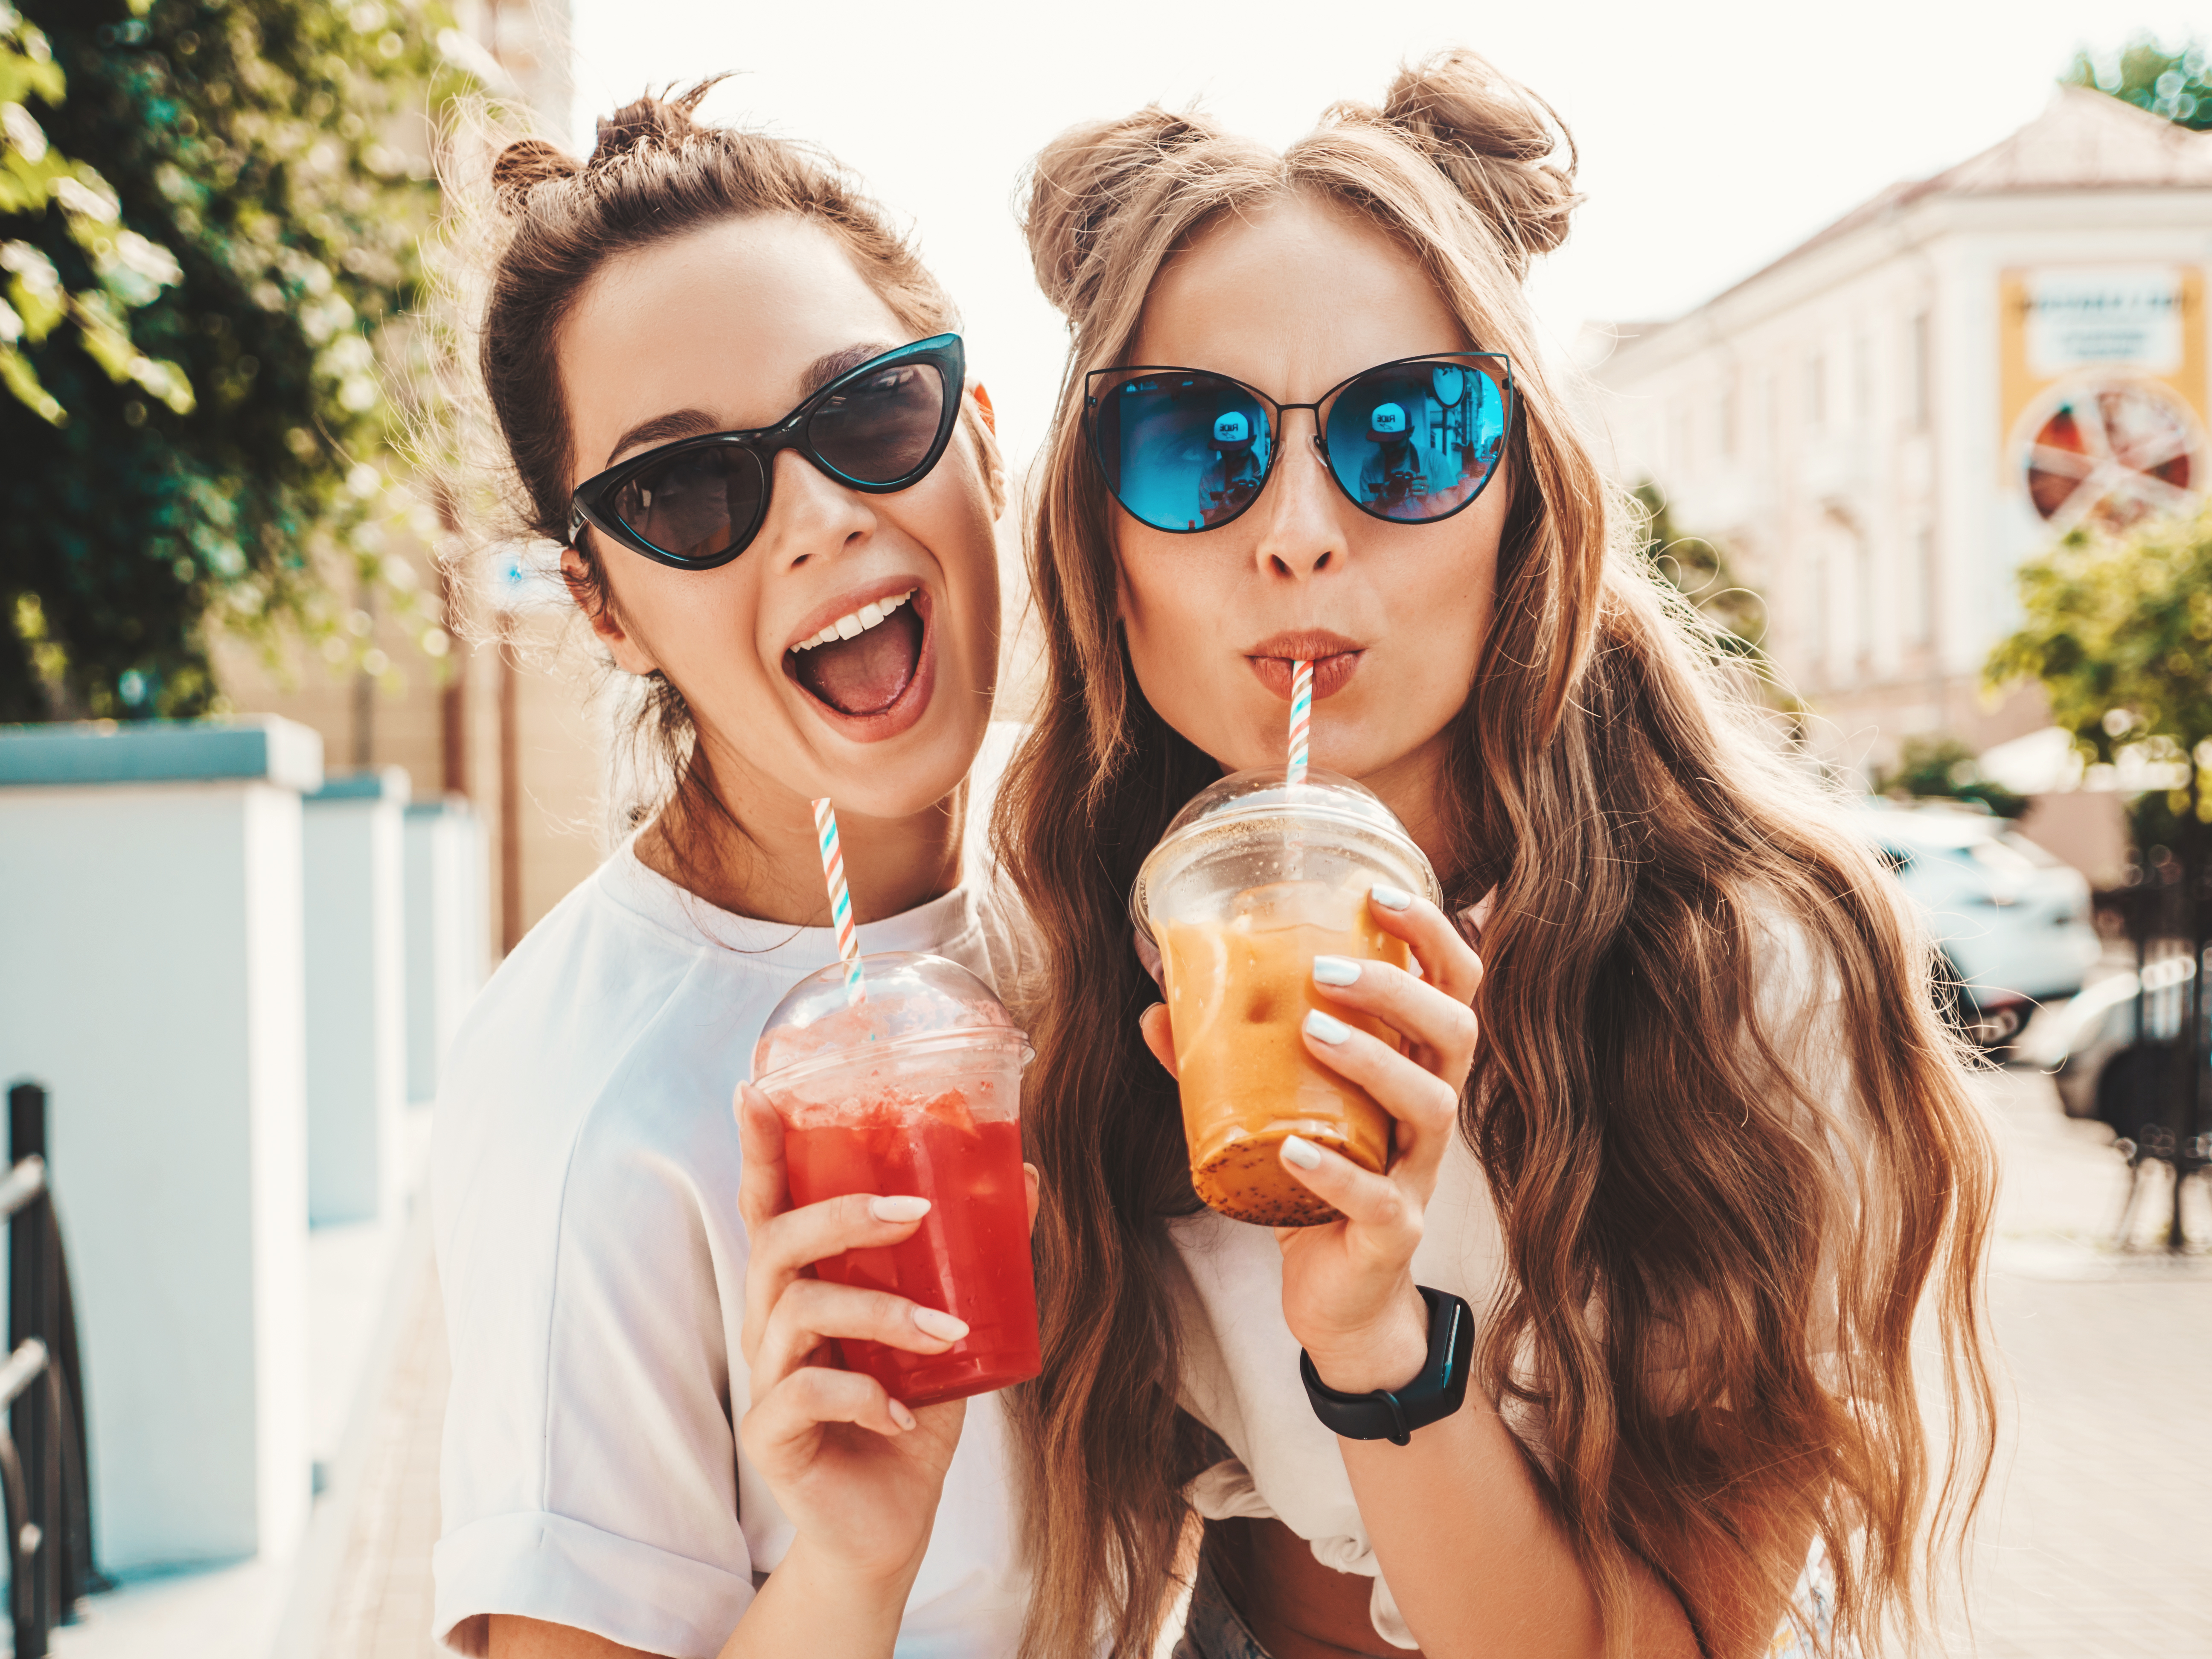 Zwei Freunde genießen Smoothies | Quelle: Shutterstock